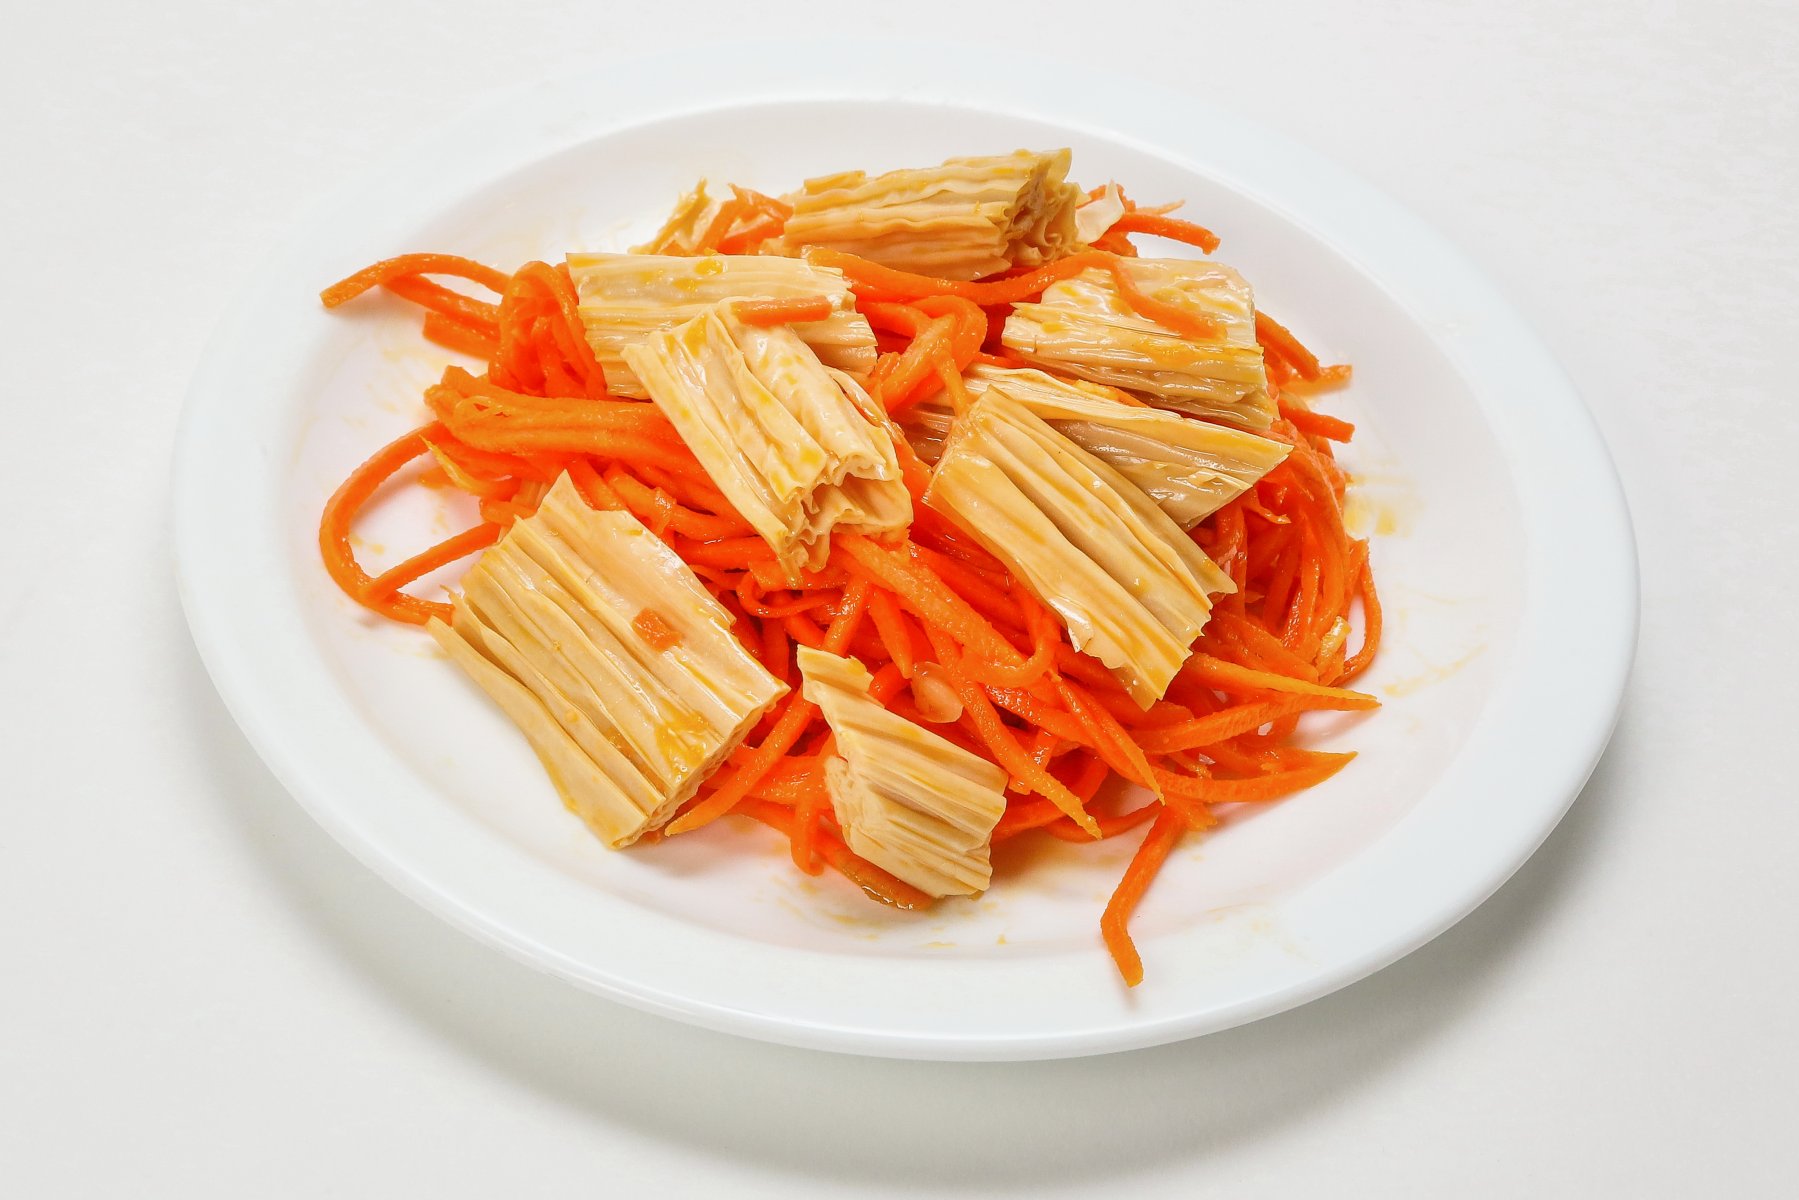 Спаржа по корейски: 7 пошаговых рецептов, из чего делается, калорийность, польза и вред для организма